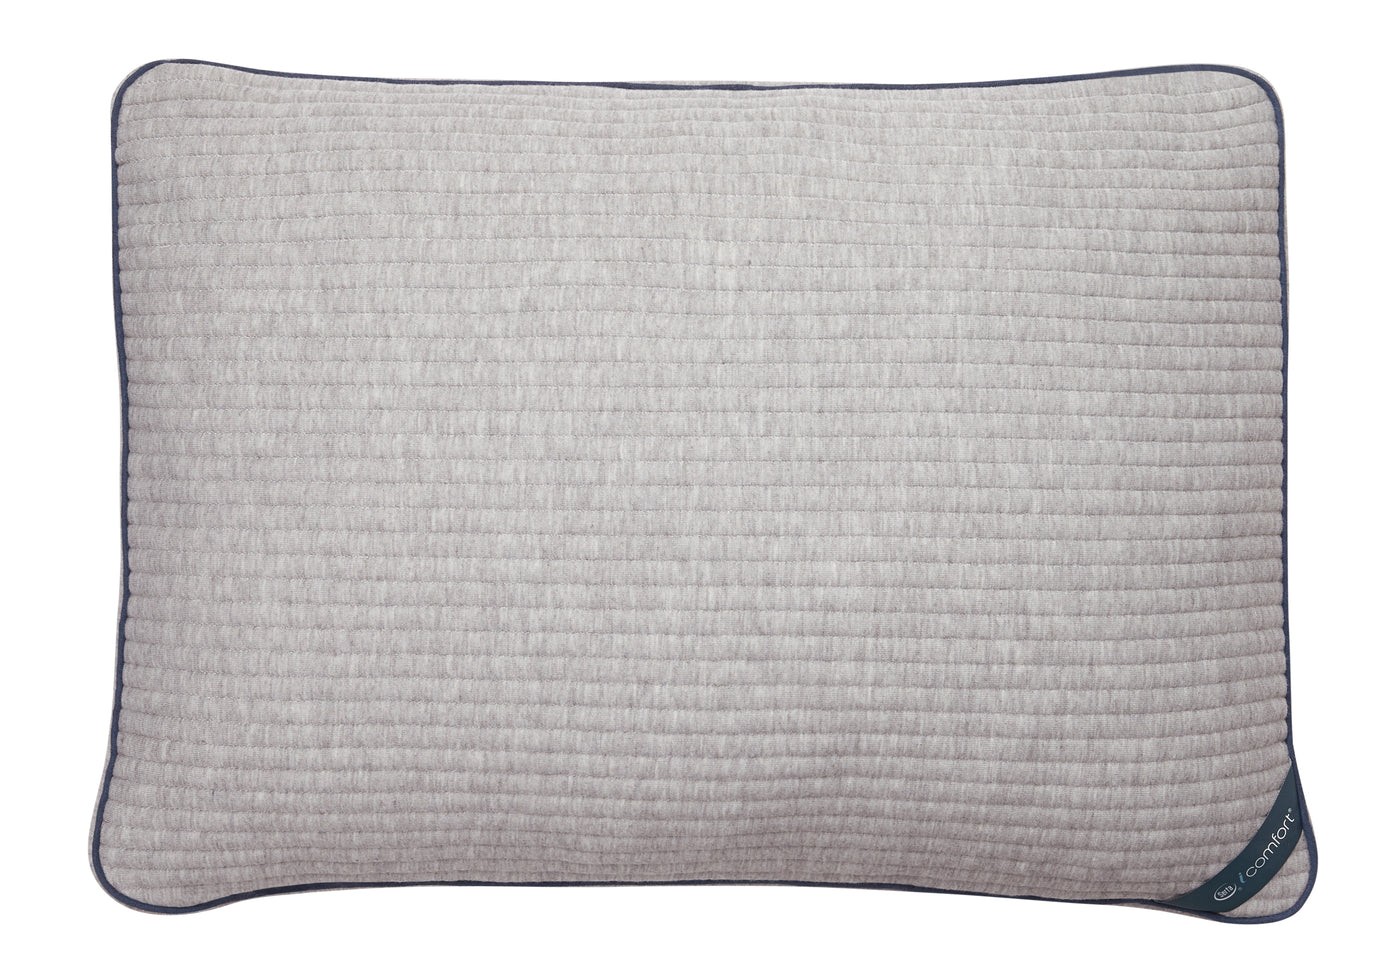 Serta iComfort Scrunch 4.0 Queen Pillow